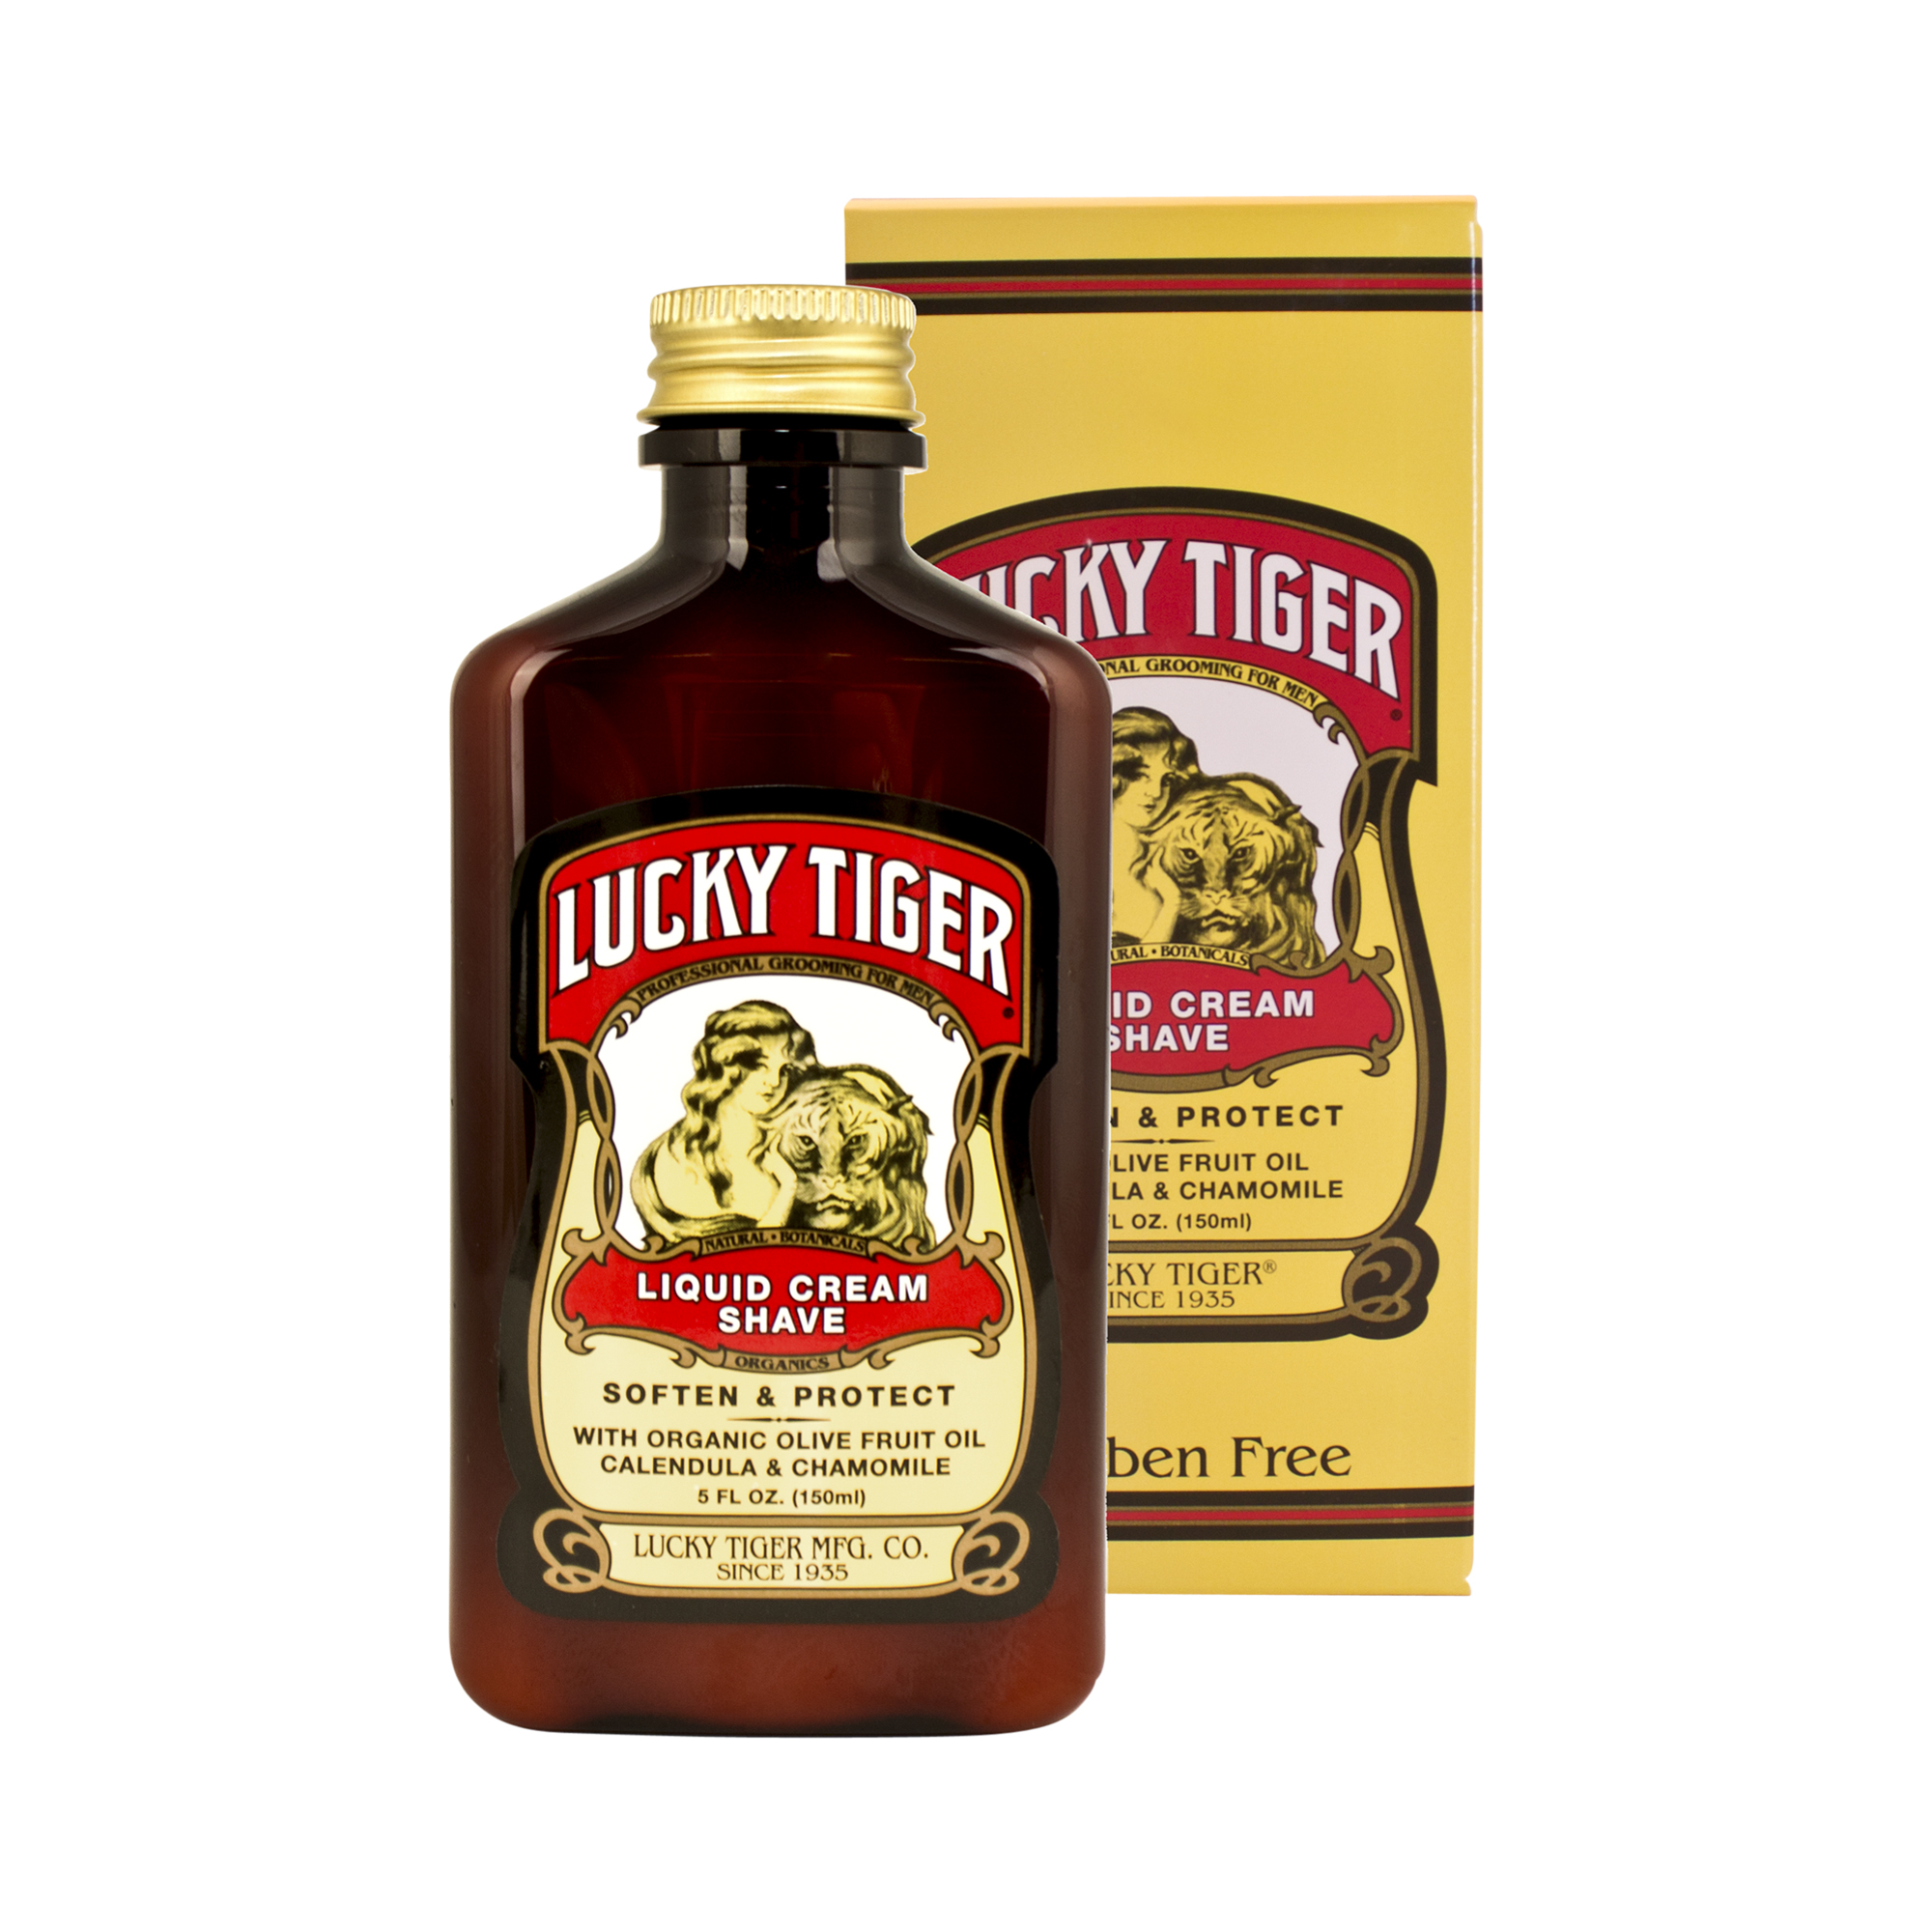 Lucky Tiger - Premium Liquid Cream Shave - flüssige Rasiercreme